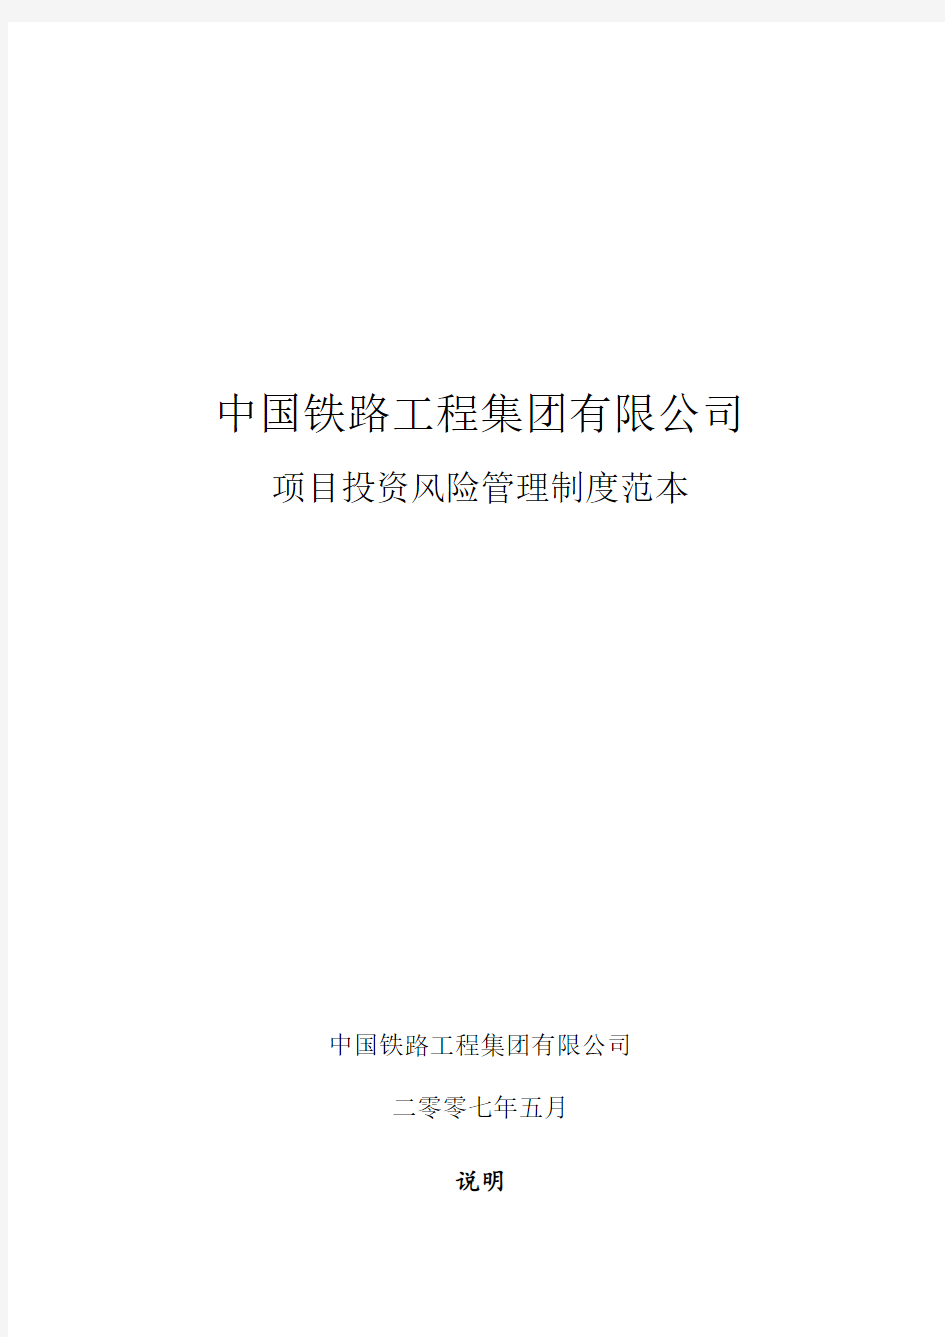 中国中铁项目投资管理制度范本0509终稿(针对子公司的)